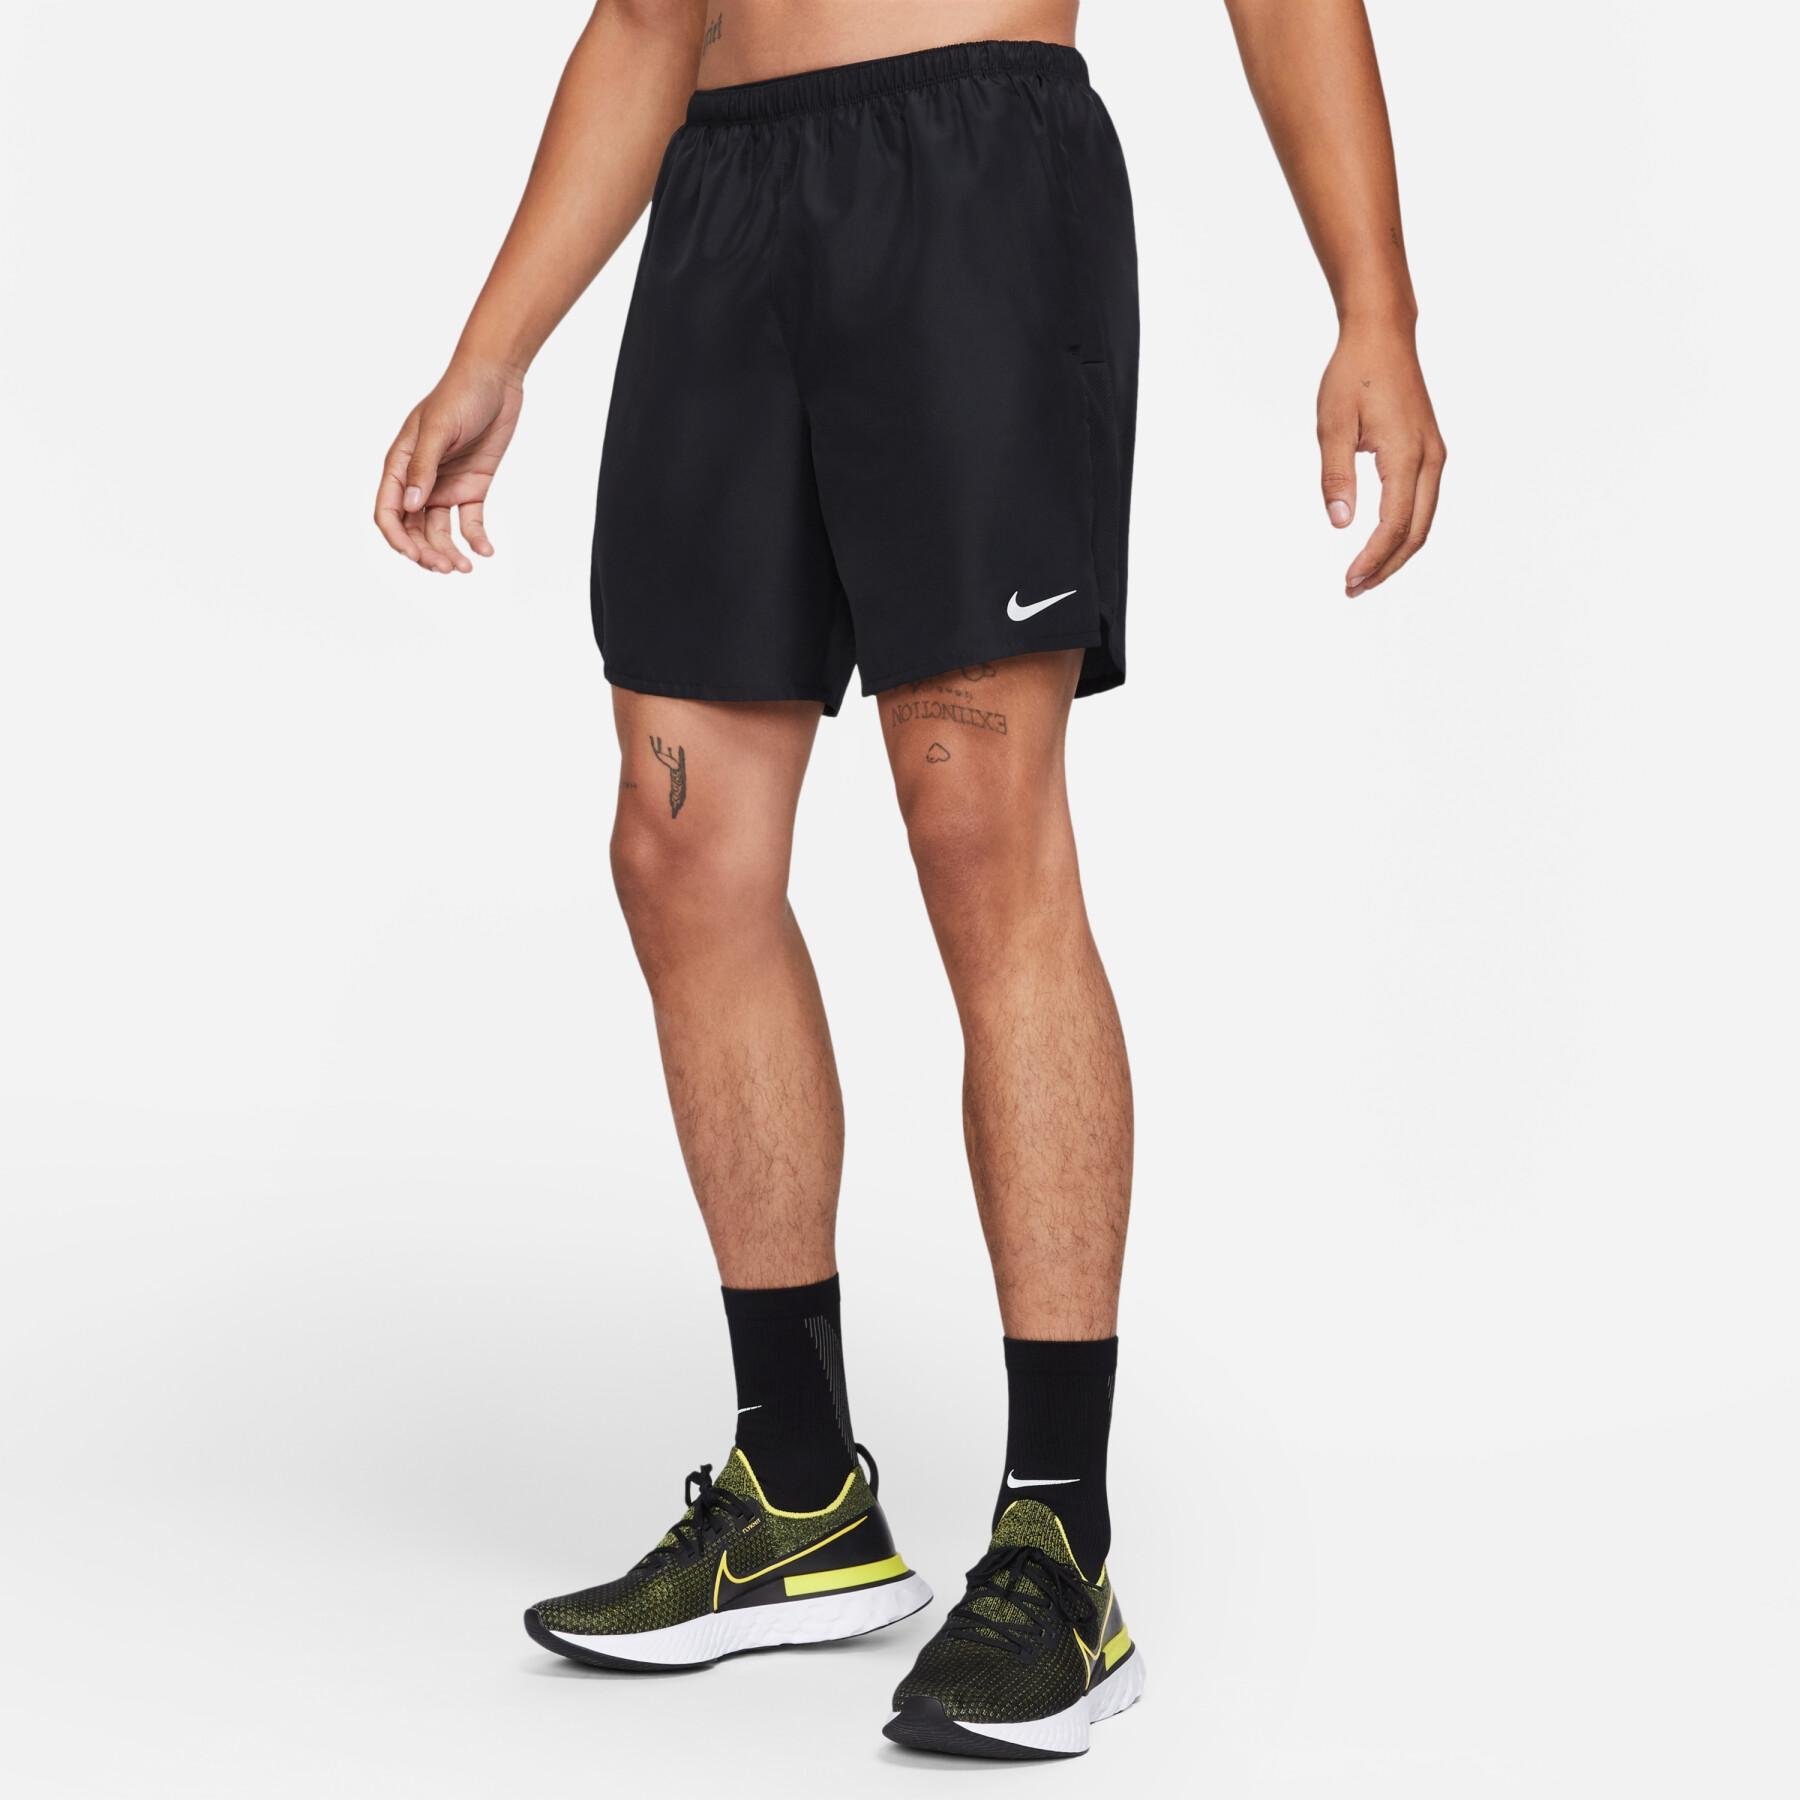 Pantaloncini Nike Challenger